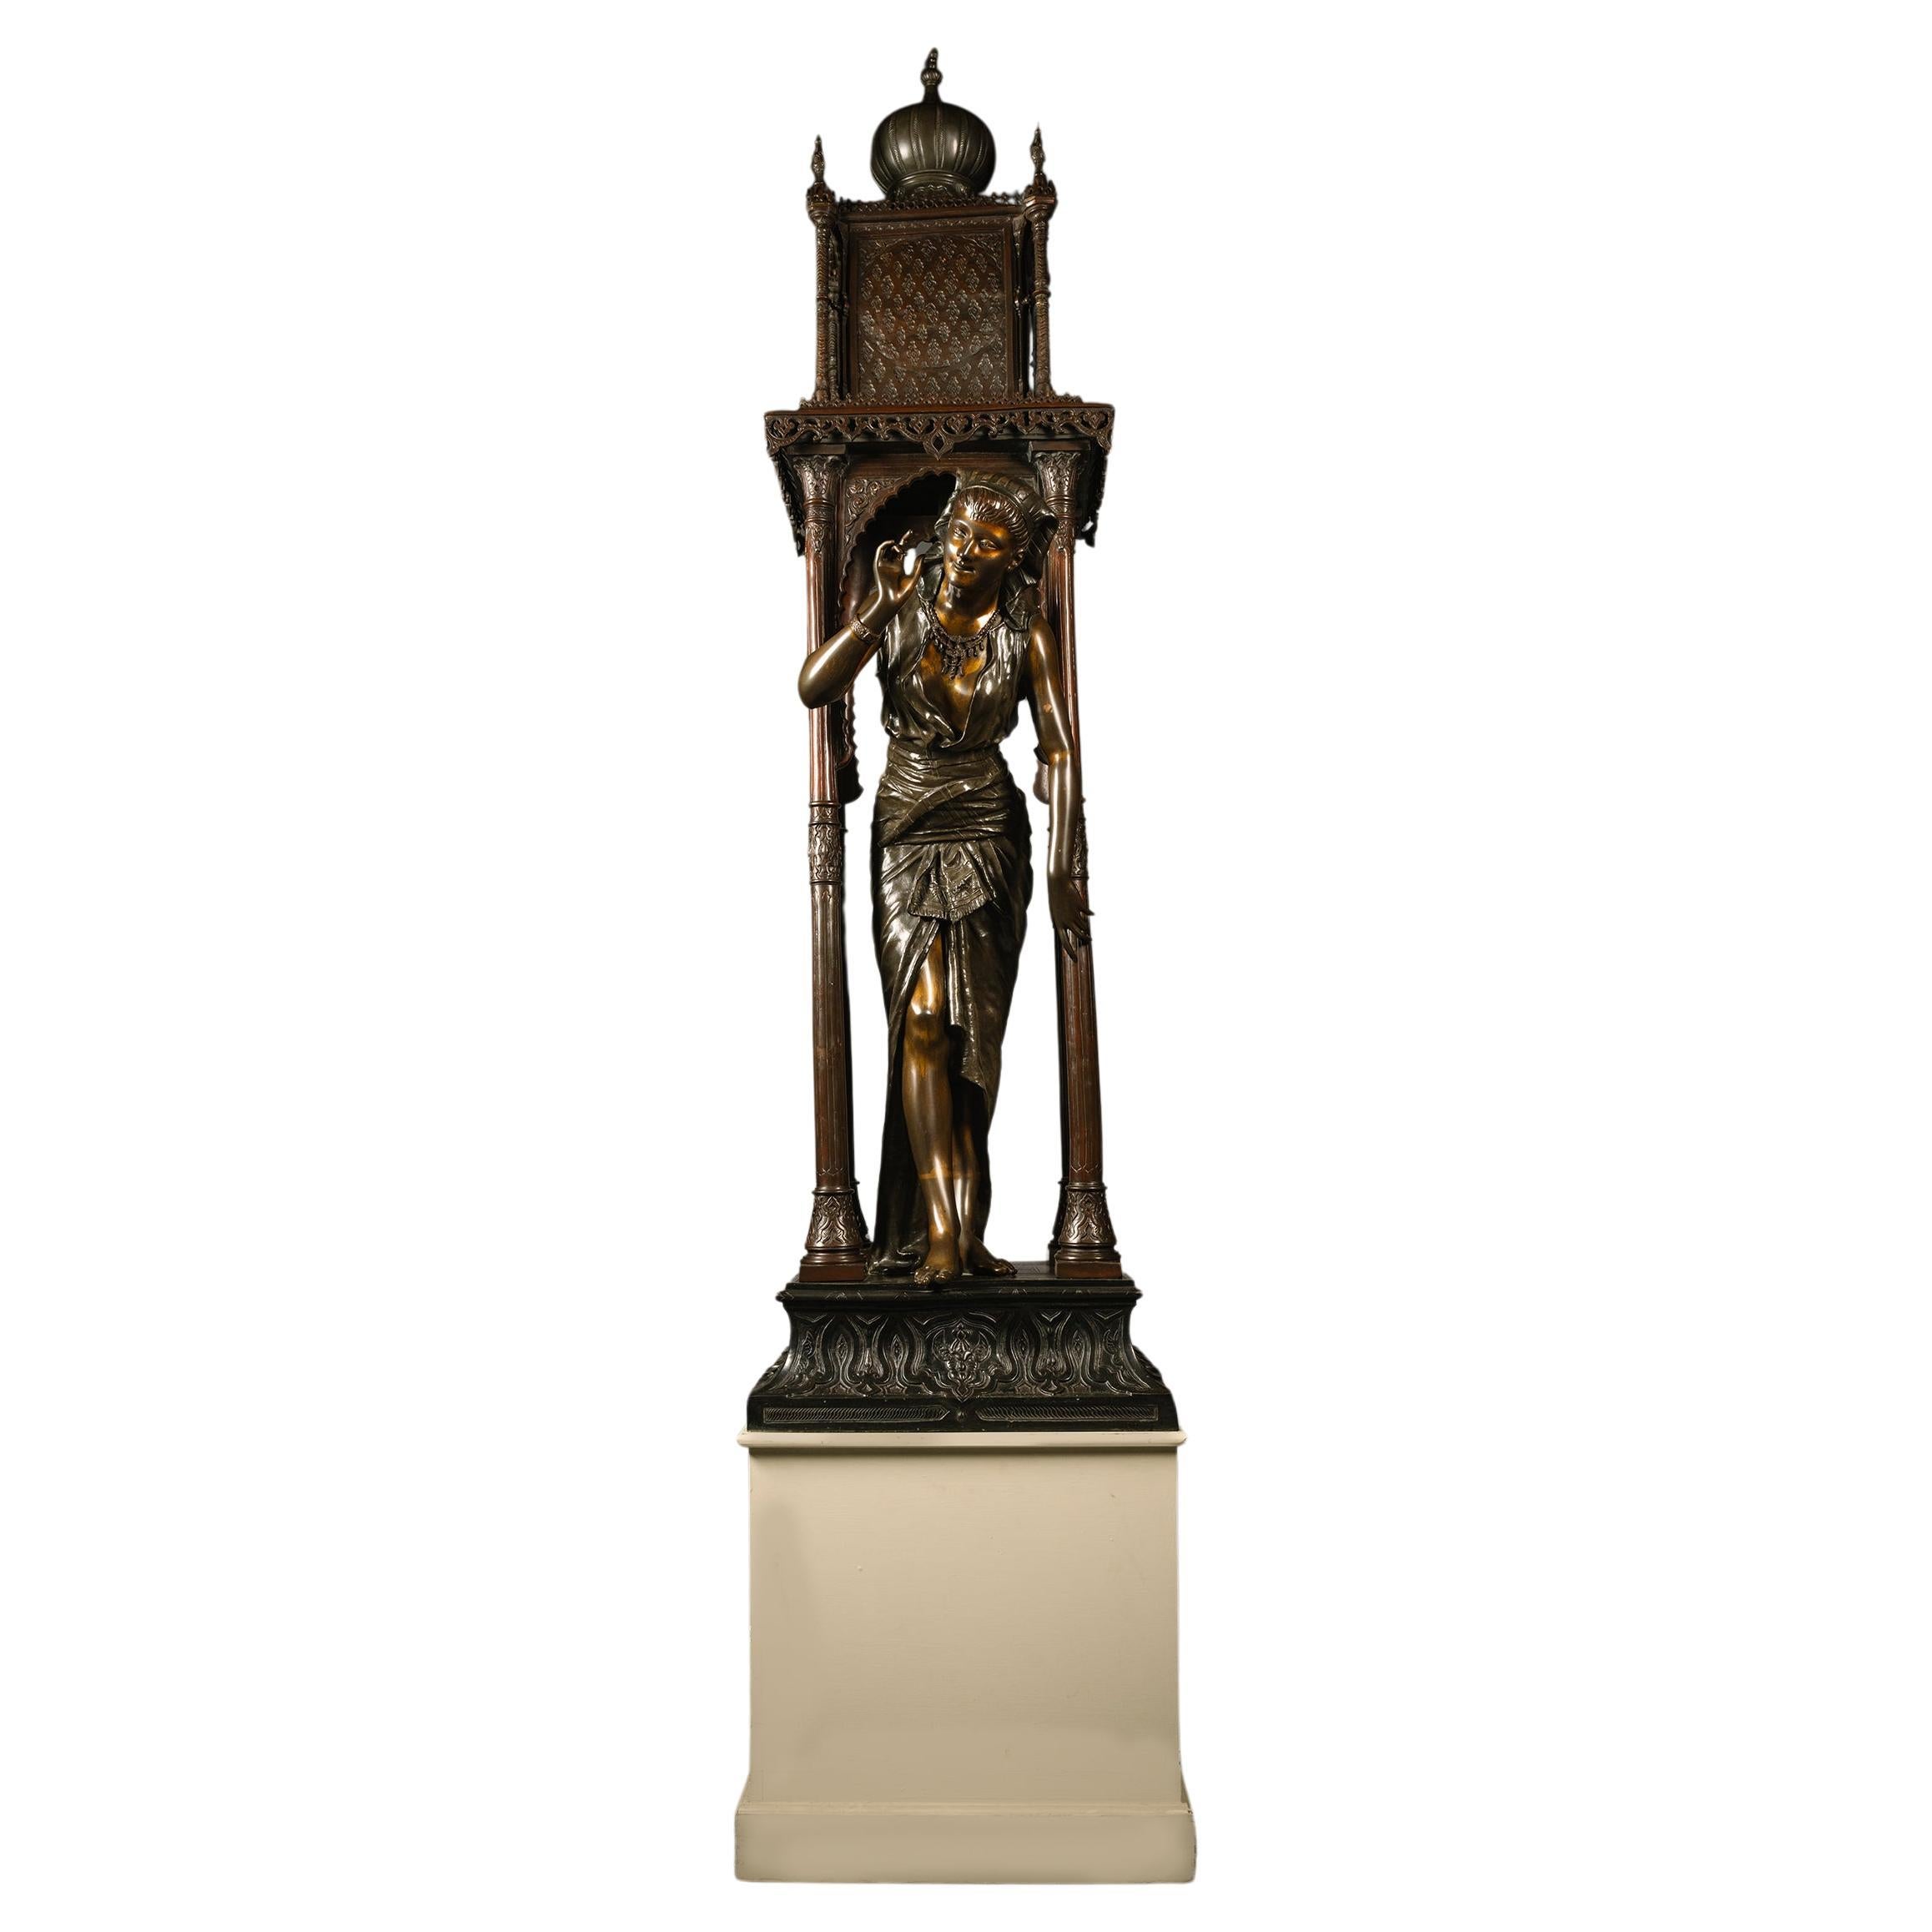 Orientalische lebensgroße figurale Bronzestatue in Bronzeform, Louis Hottot zugeschrieben